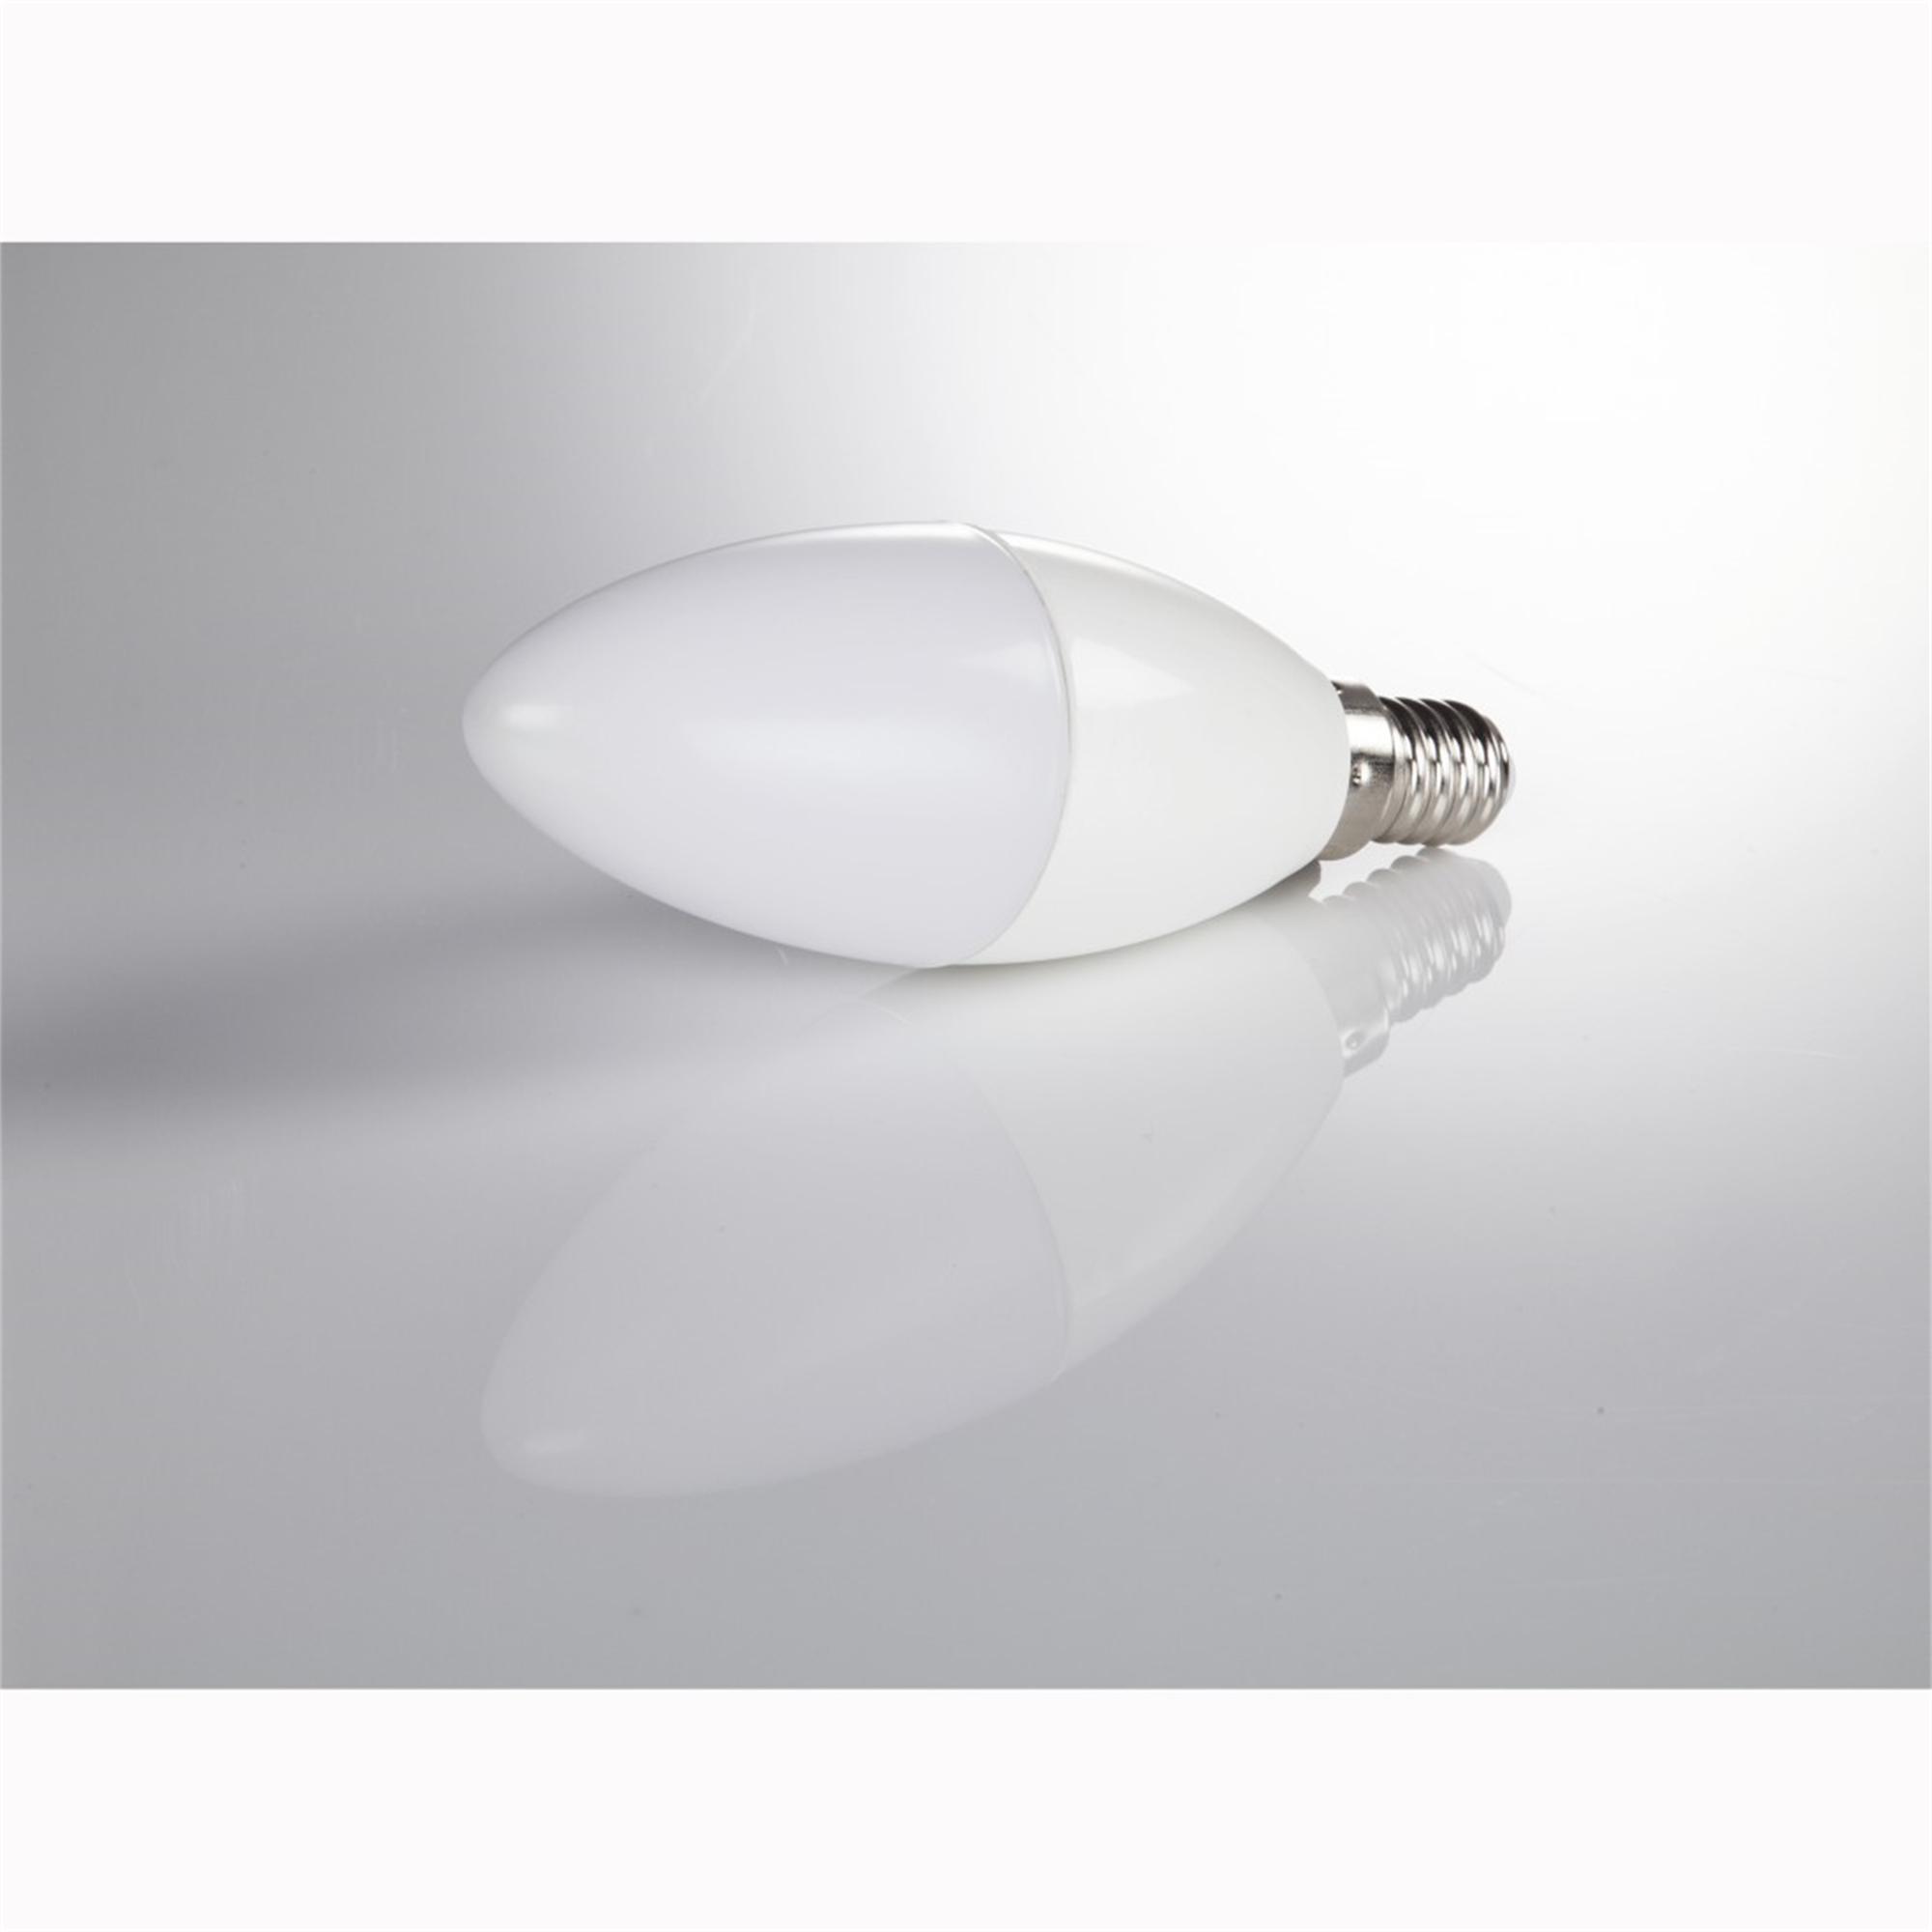 XAVAX E14, LED-Lampe ersetzt Warmweiß E14 806lm 60W